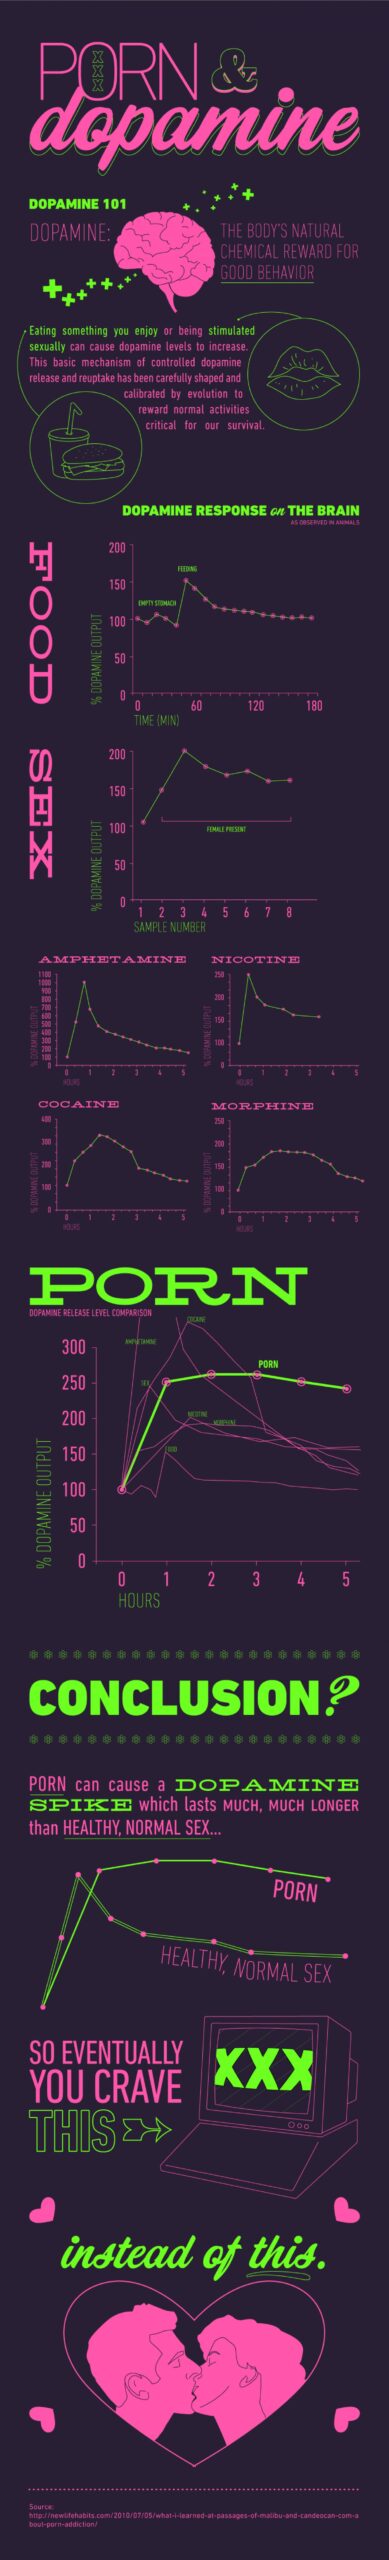 Pornografinin dopamin üzerindeki etkisini istatistiksel olarak gösteren çalışma